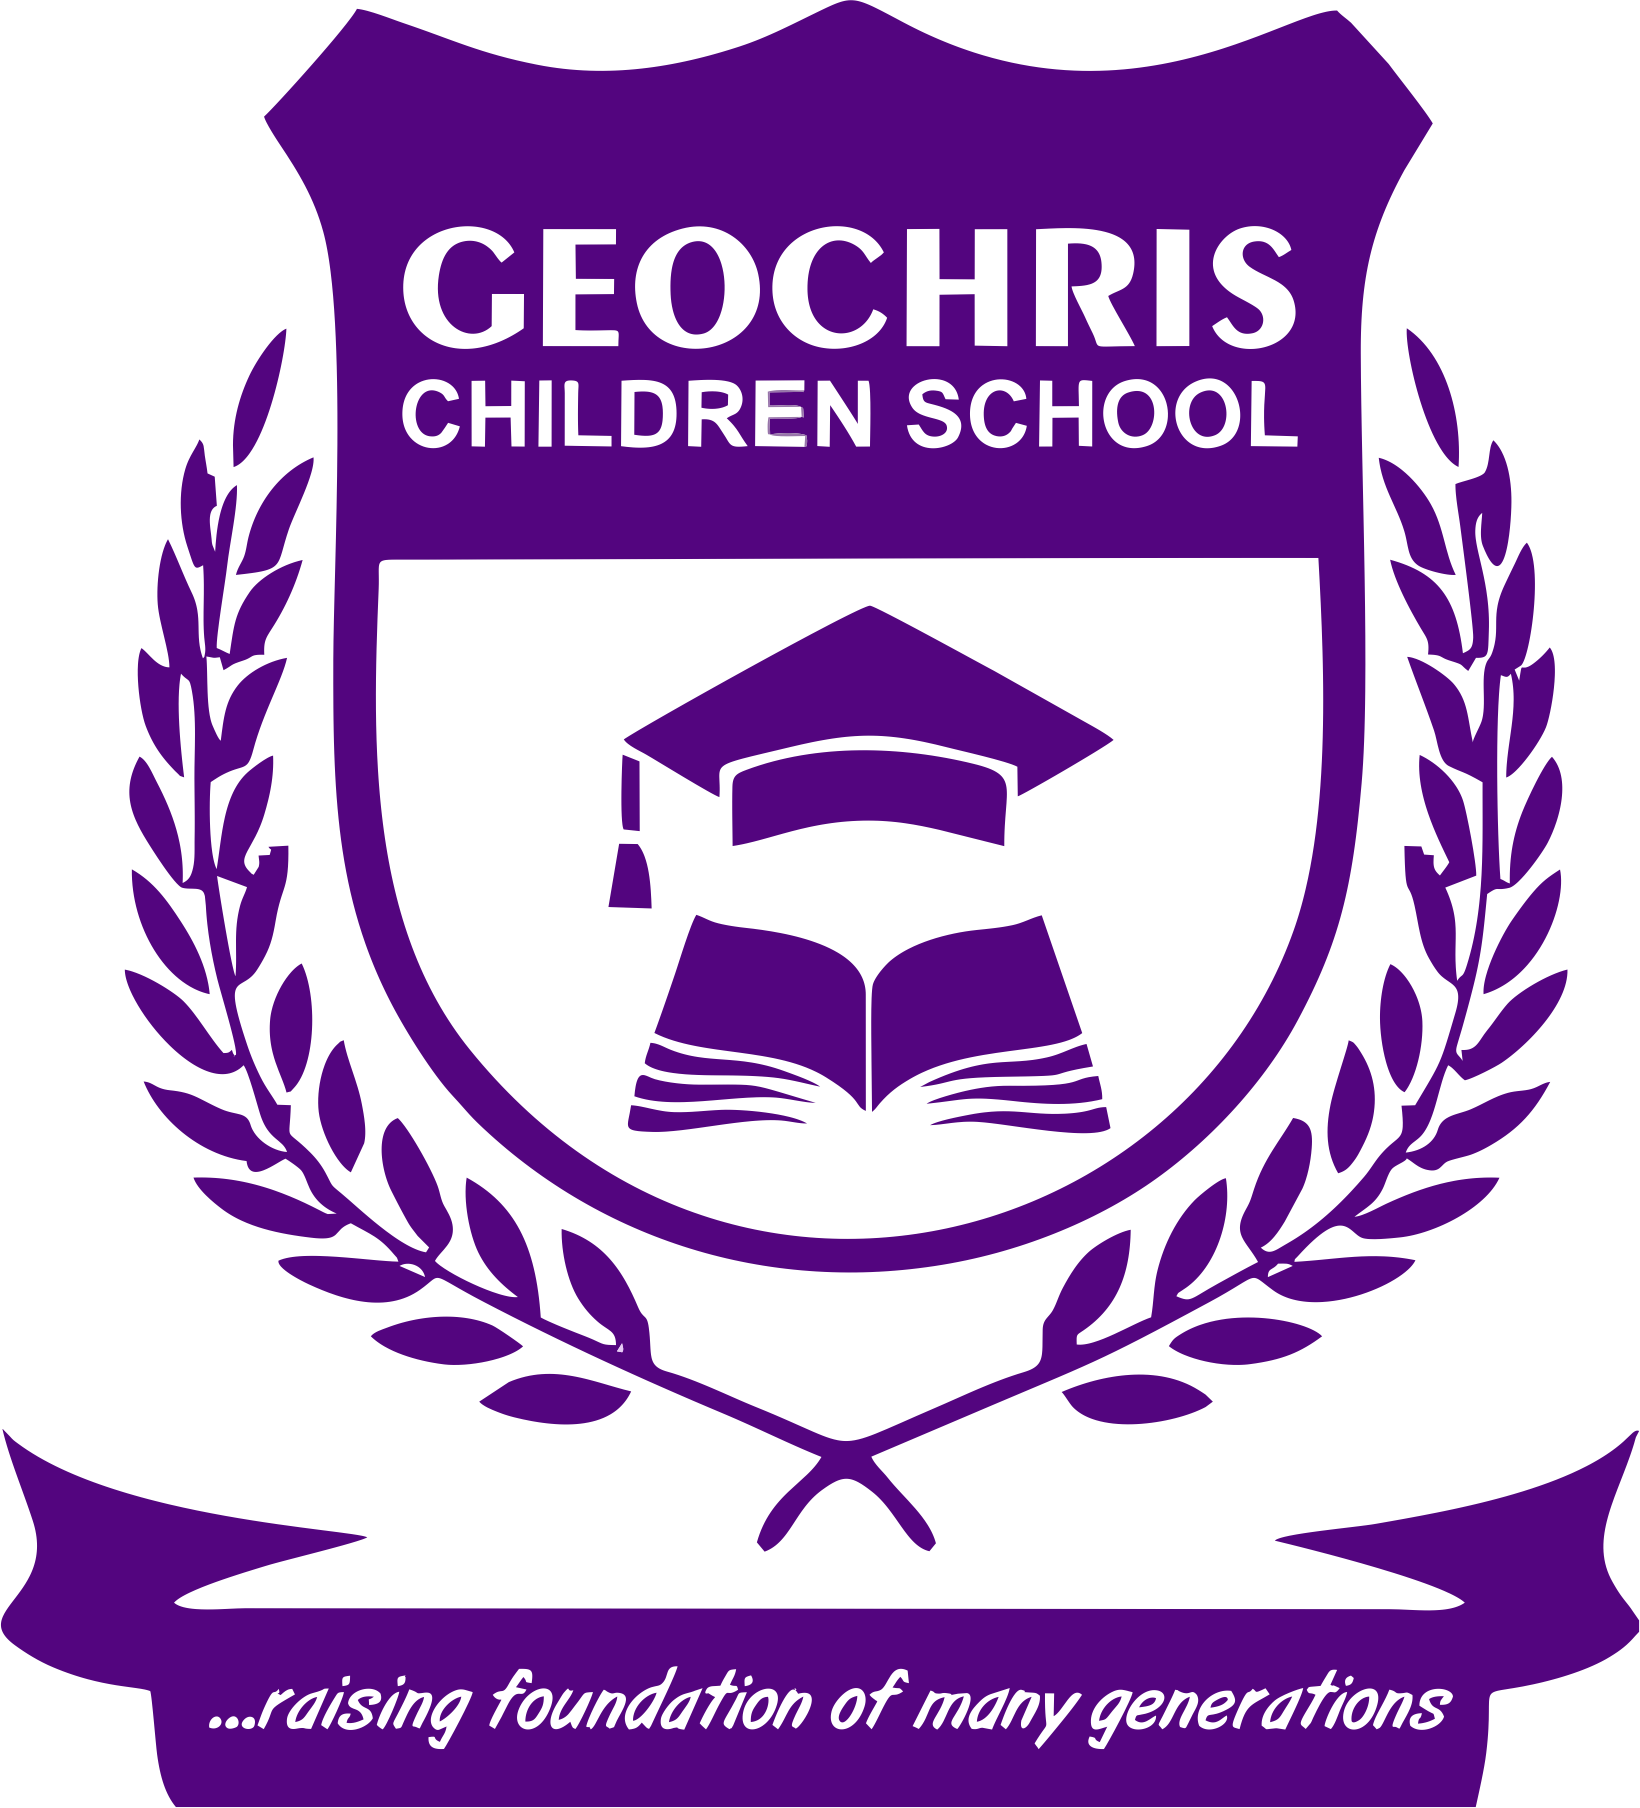 GEOCHRIS SCHOOL